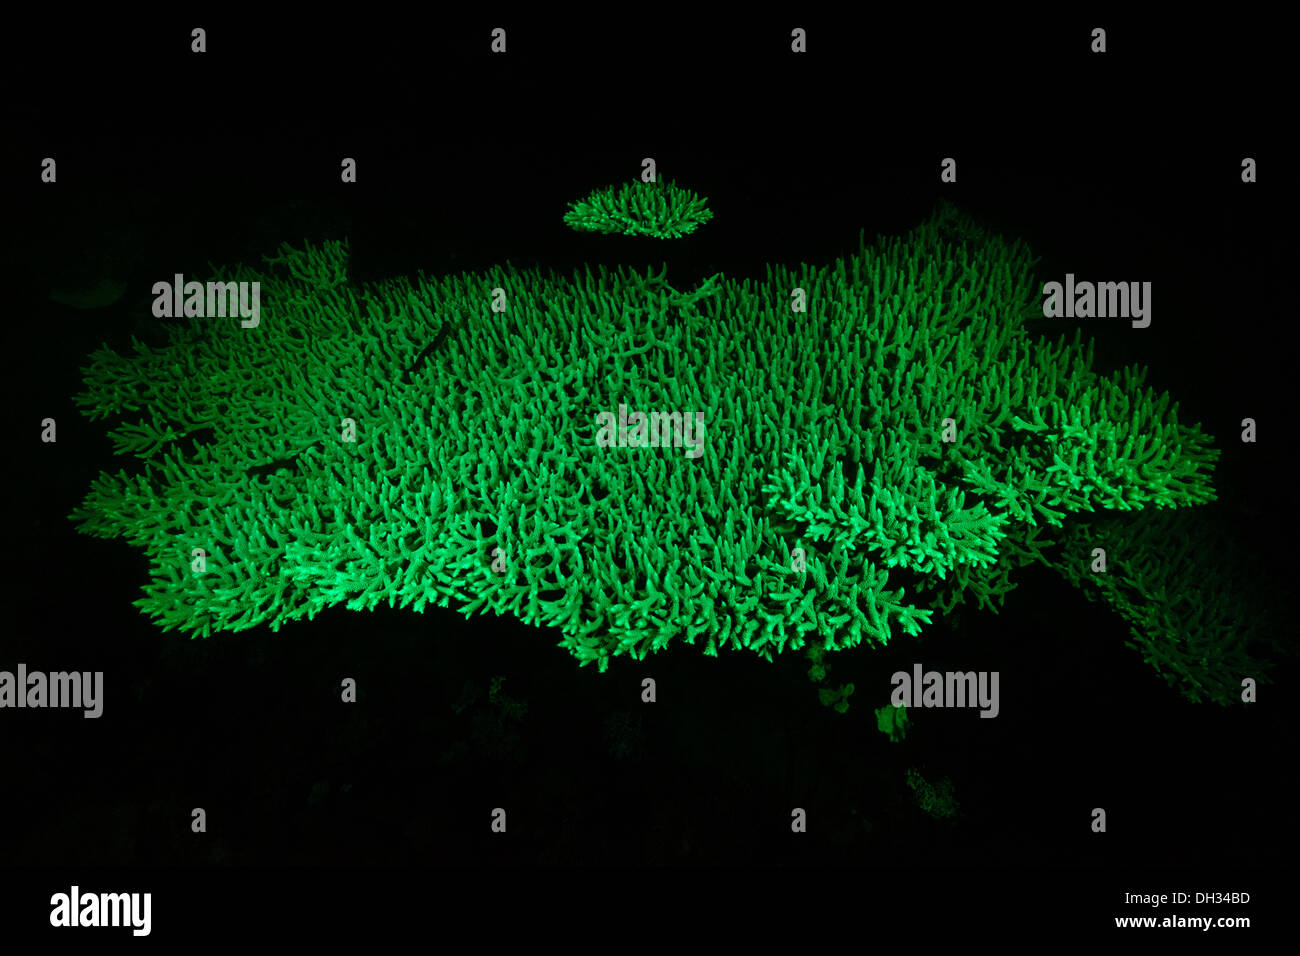 Fluorescent Table Coral, Acropora sp., Pantar, Alor Archipelago, Lesser Sunda Islands, Indonesia Stock Photo